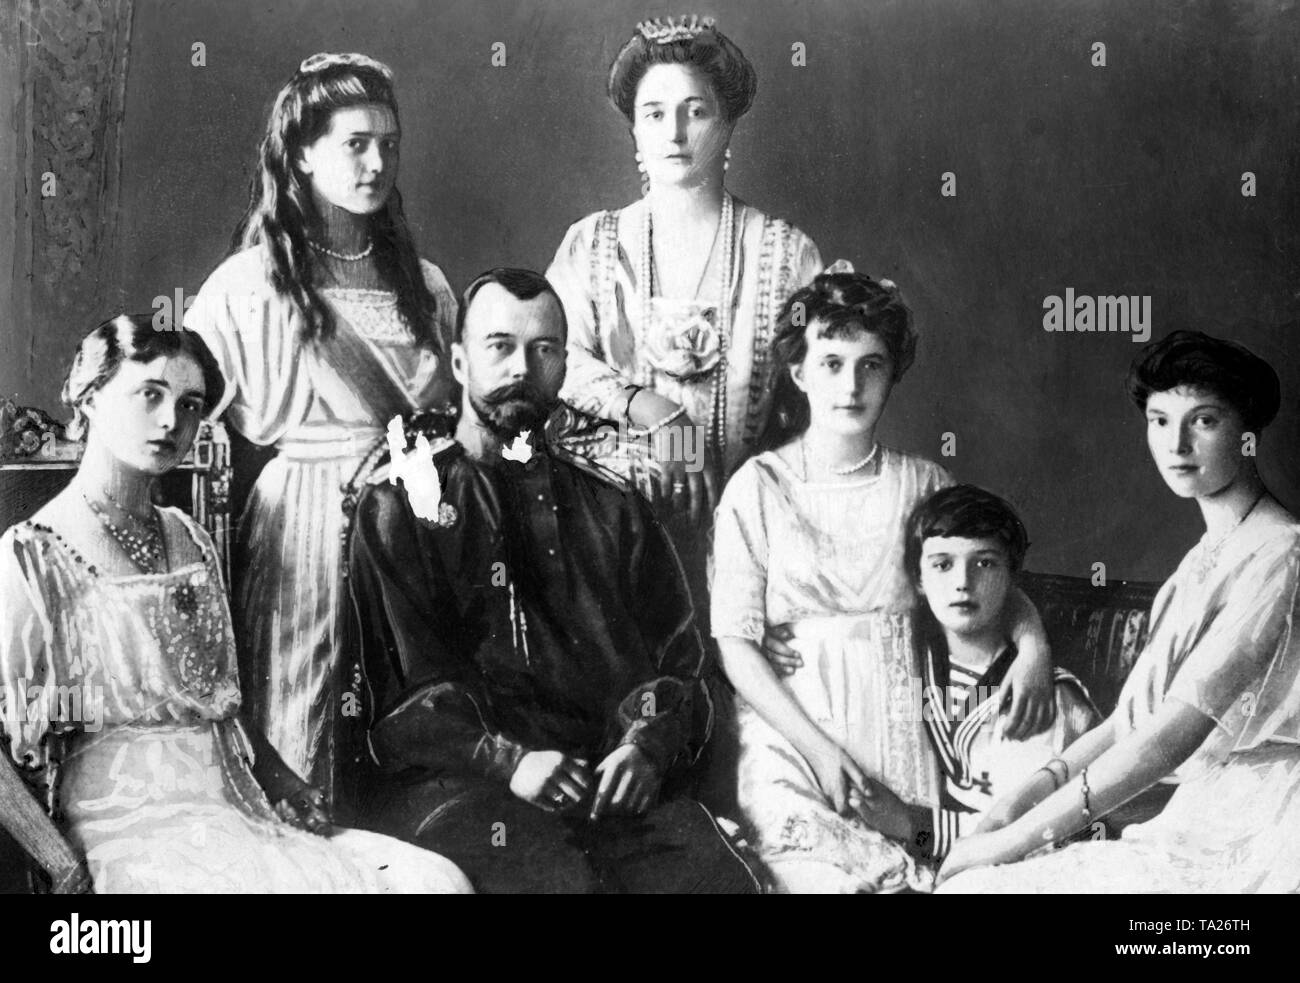 Il Tsar famiglia. Da sinistra: Olga, Maria, lo Zar Nicola II di Russia, sua moglie Alexandra Feodorovna, Anastasia, Tsarevich Alexei (erede al trono) e Tatiana. Foto non datata intorno al 1913. Foto Stock